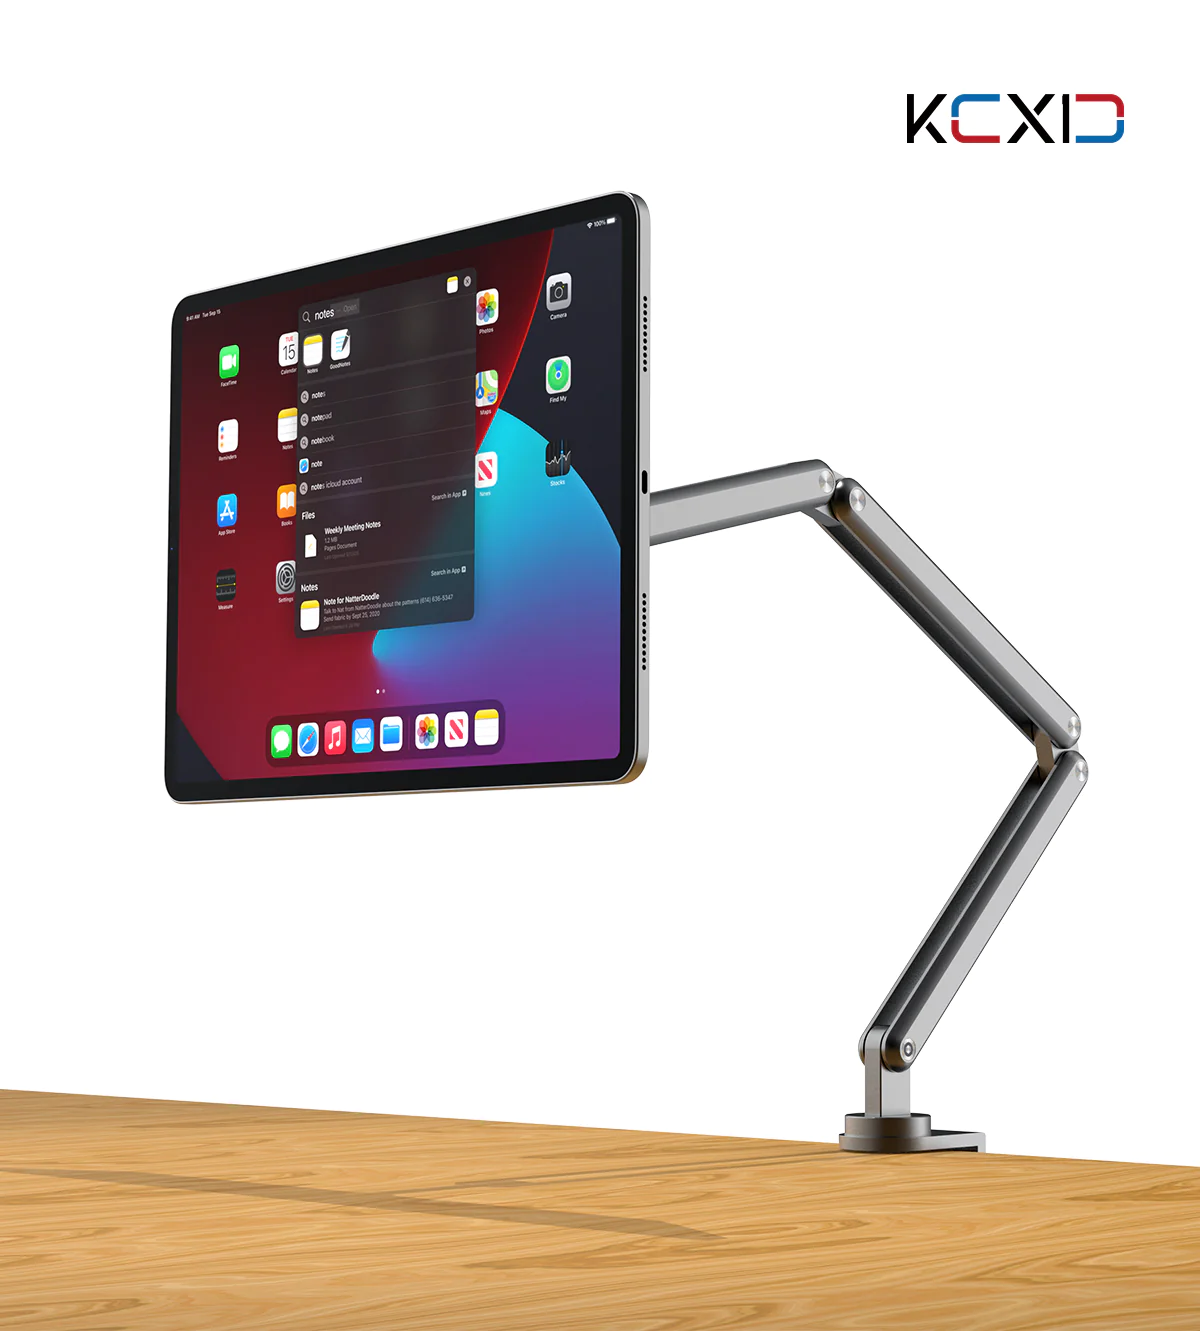 Immagine del prodotto KUXIU X36 iPad Foldable Magnetic Mount